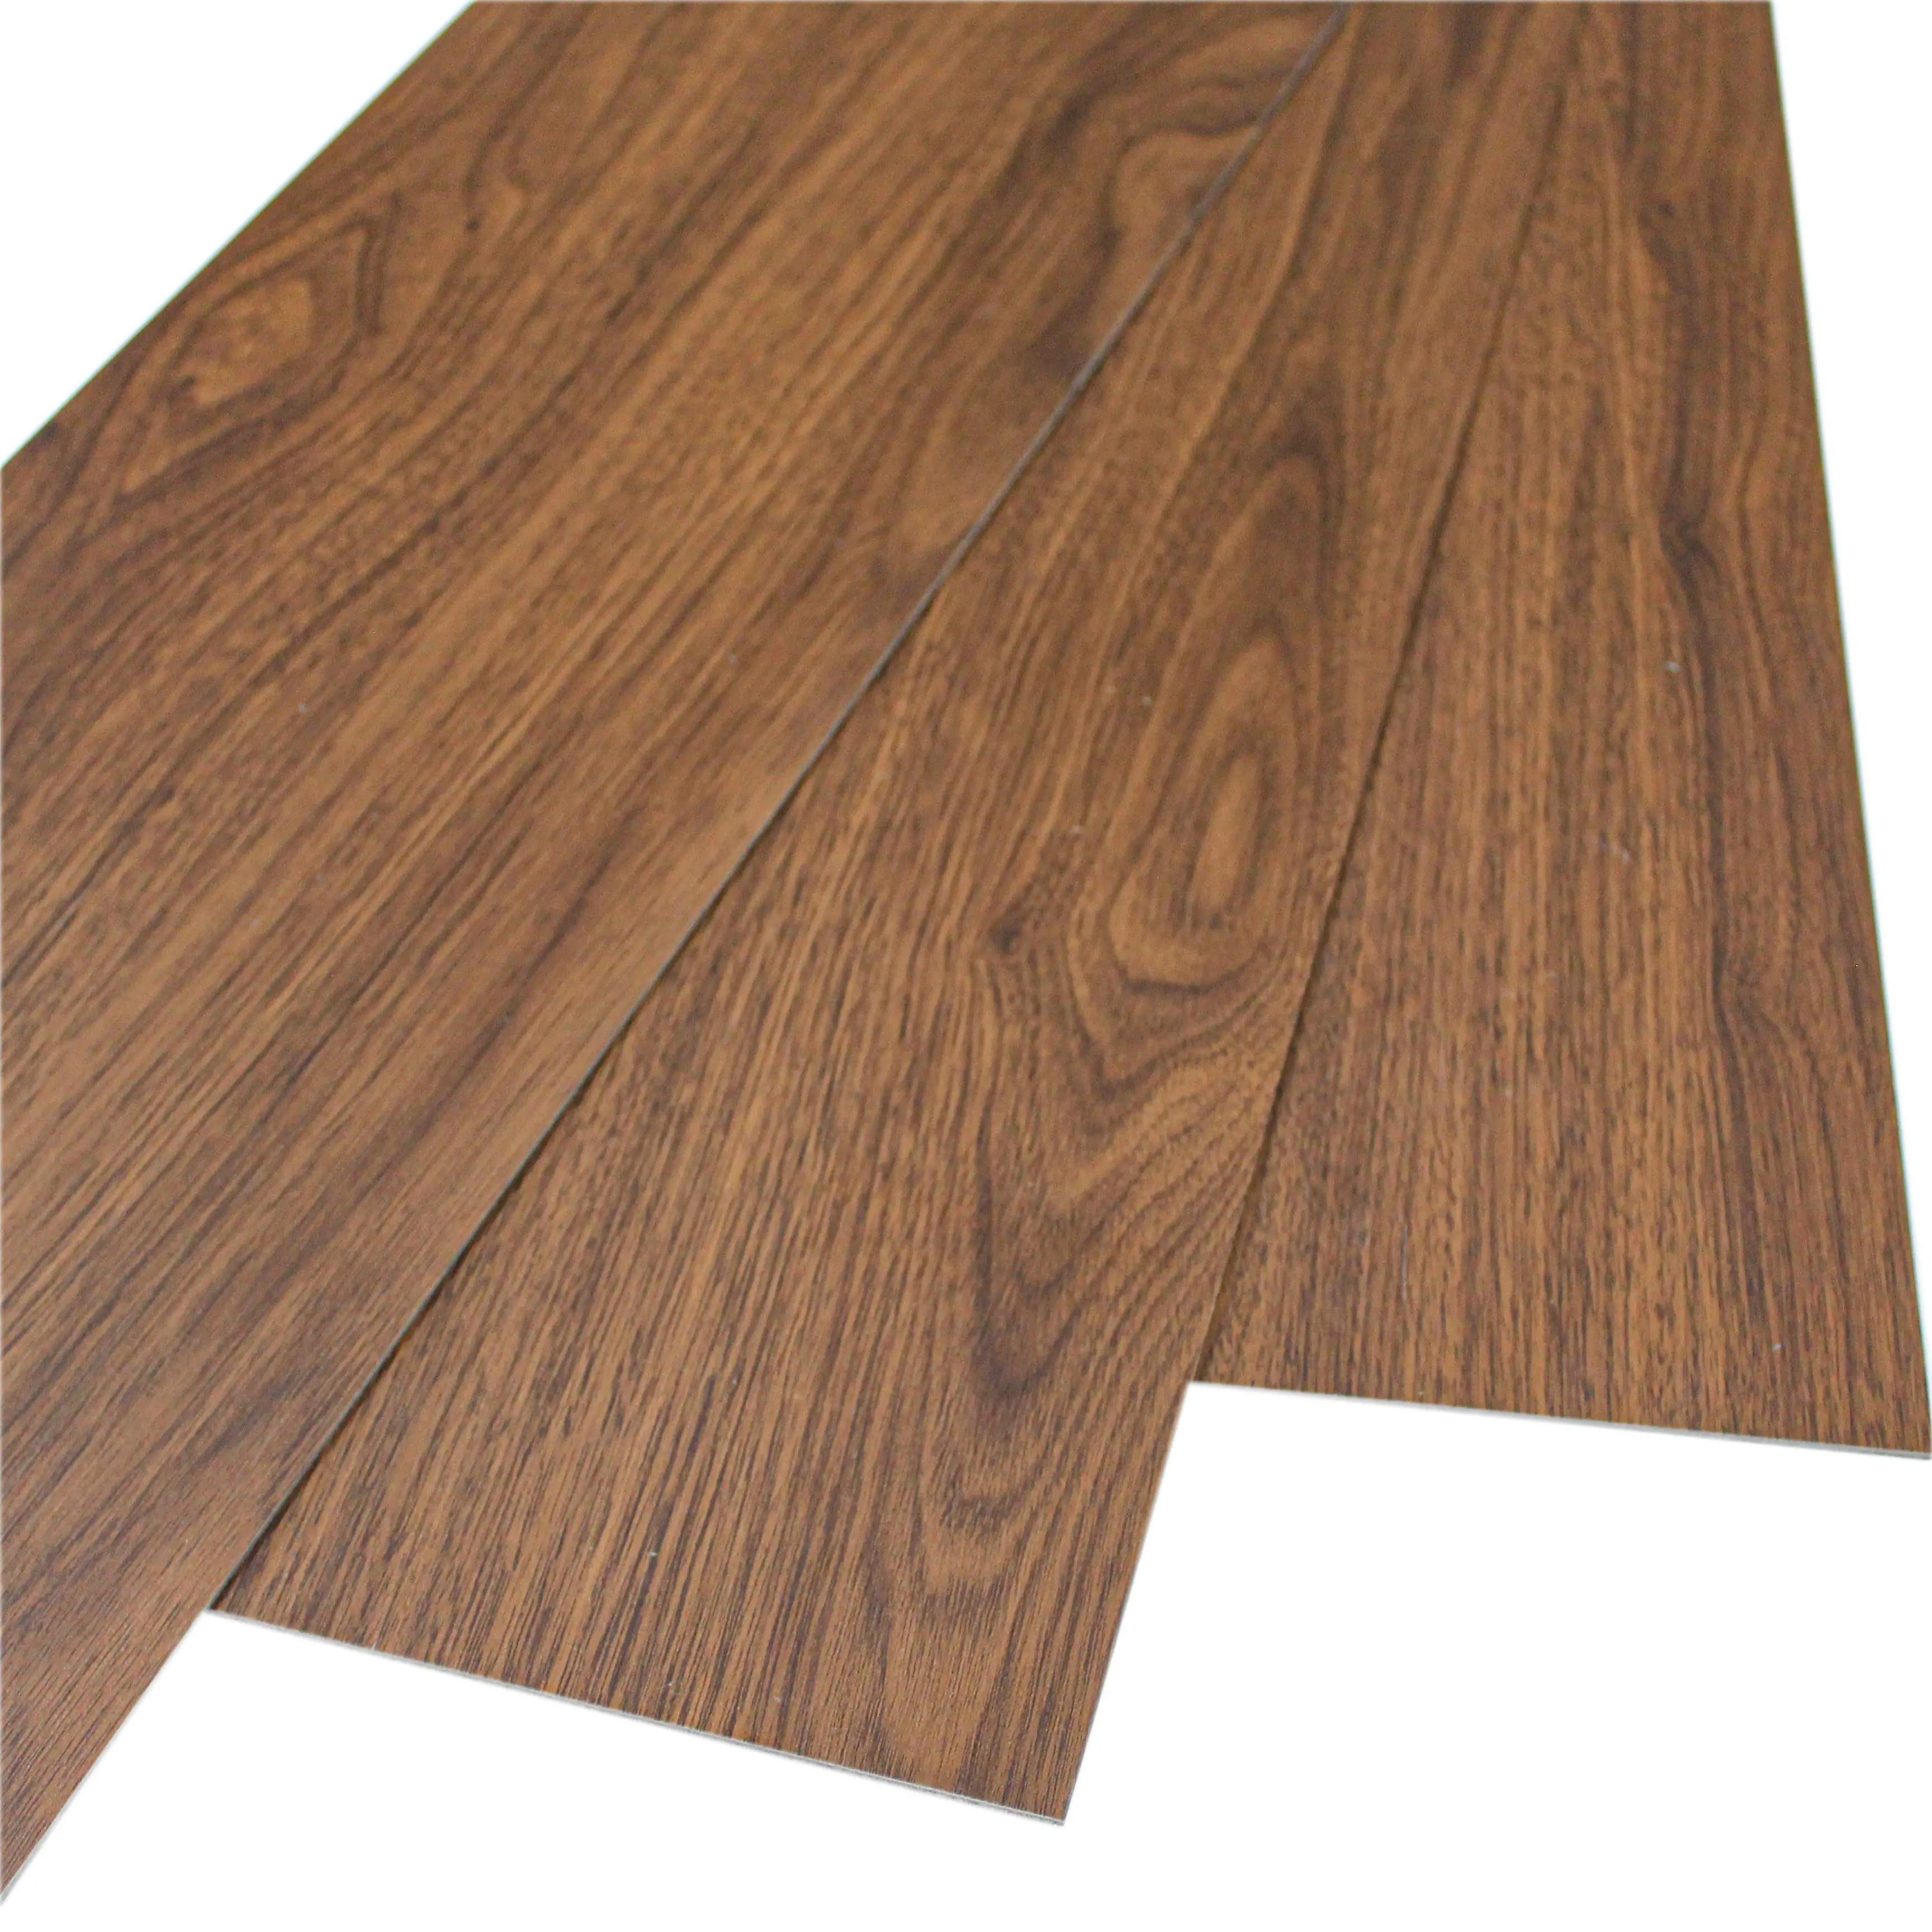 Materiais decorativos do pvc spc, piso laminado de madeira/laminado